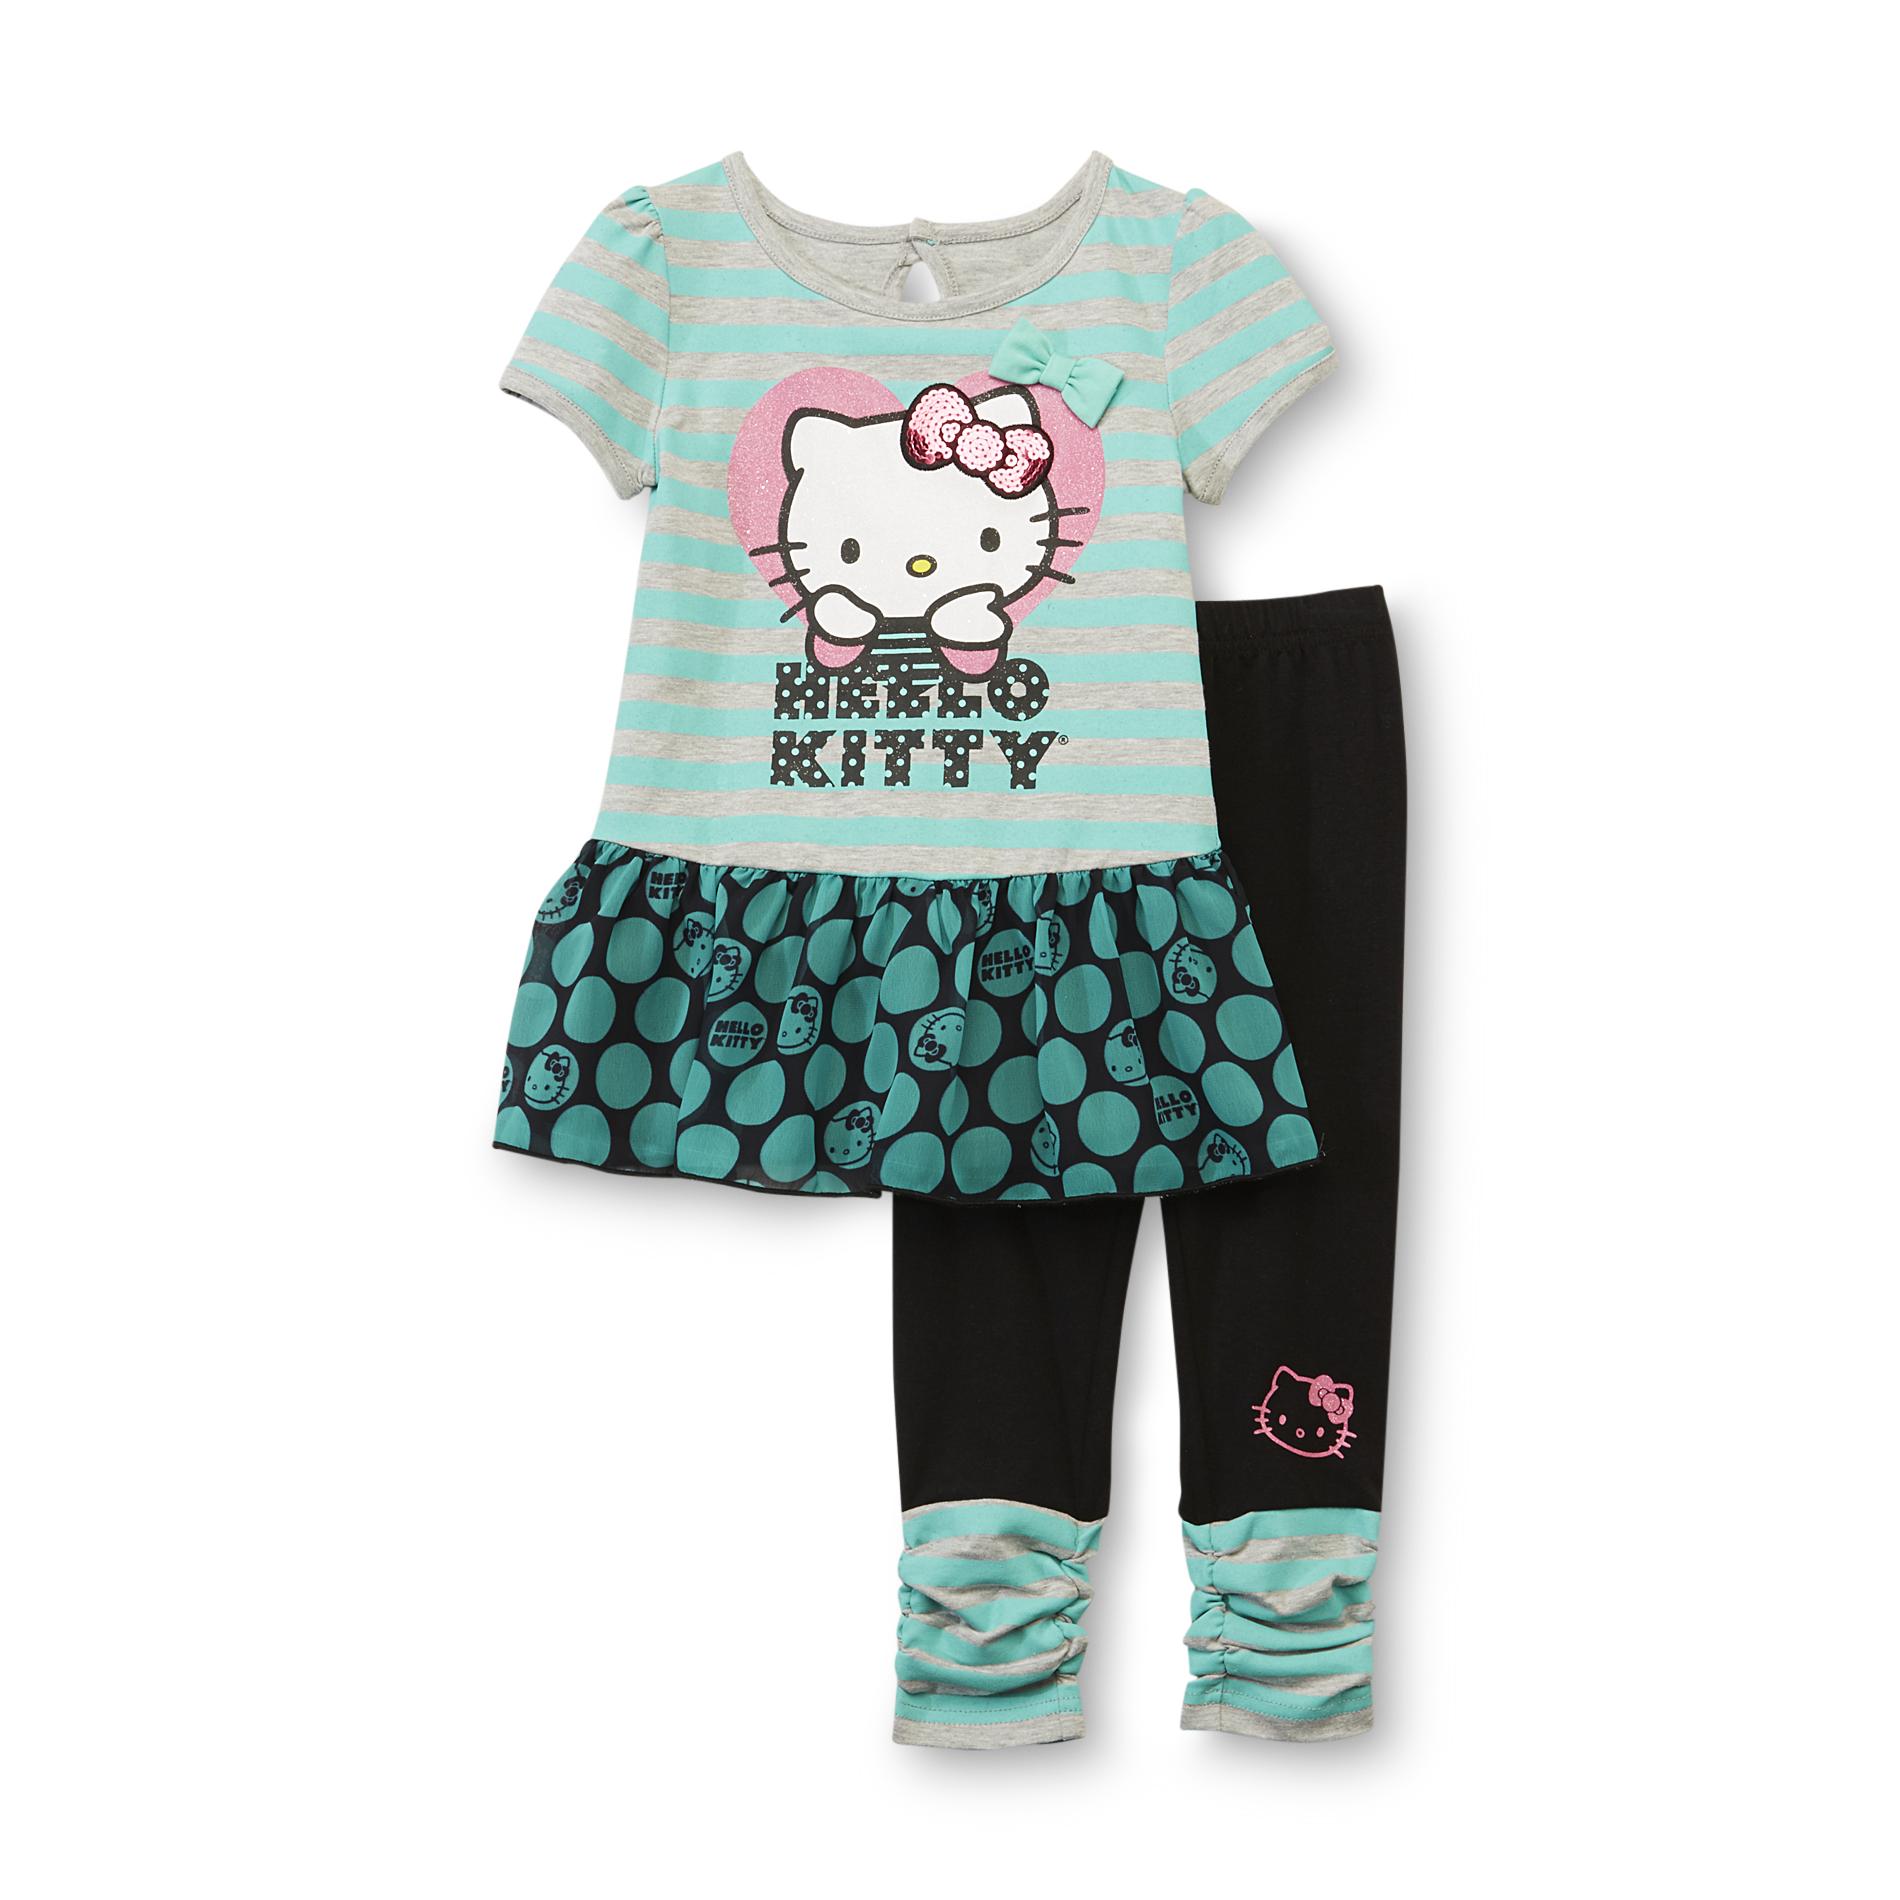 Hello Kitty Toddler Girl's Dress & Leggings - Striped & Polka Dot